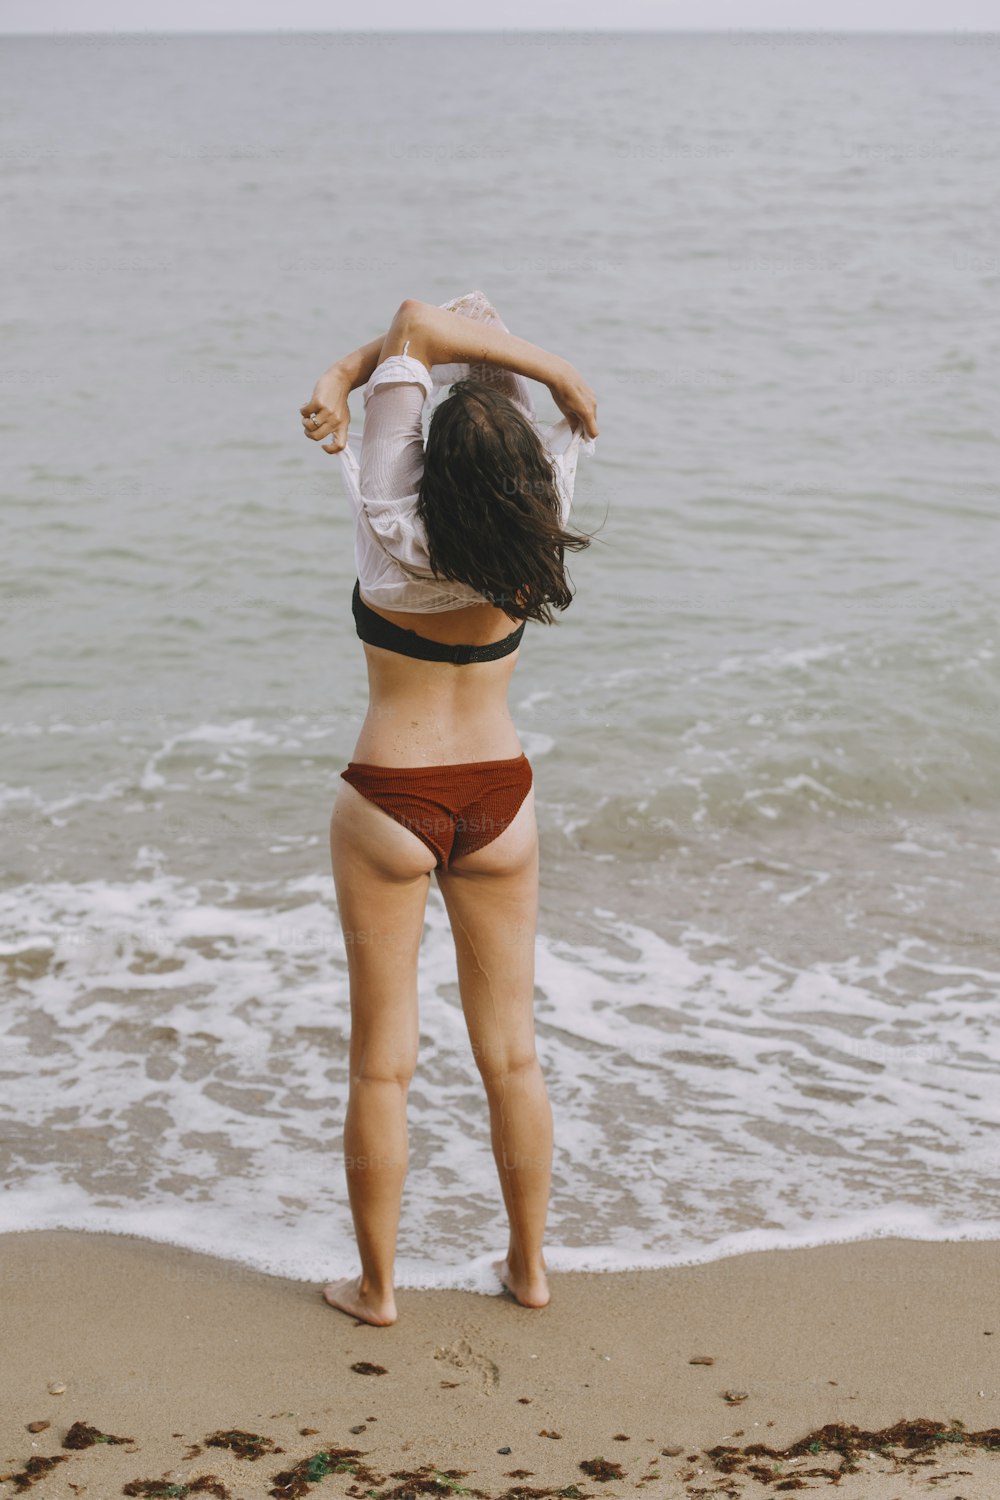 해변에서 젖은 흰 셔츠를 벗고 있는 행복한 젊은 여성. 해변에서 편안한 수영복을 입은 세련된 소녀. 여름 방학. 평온한 순간